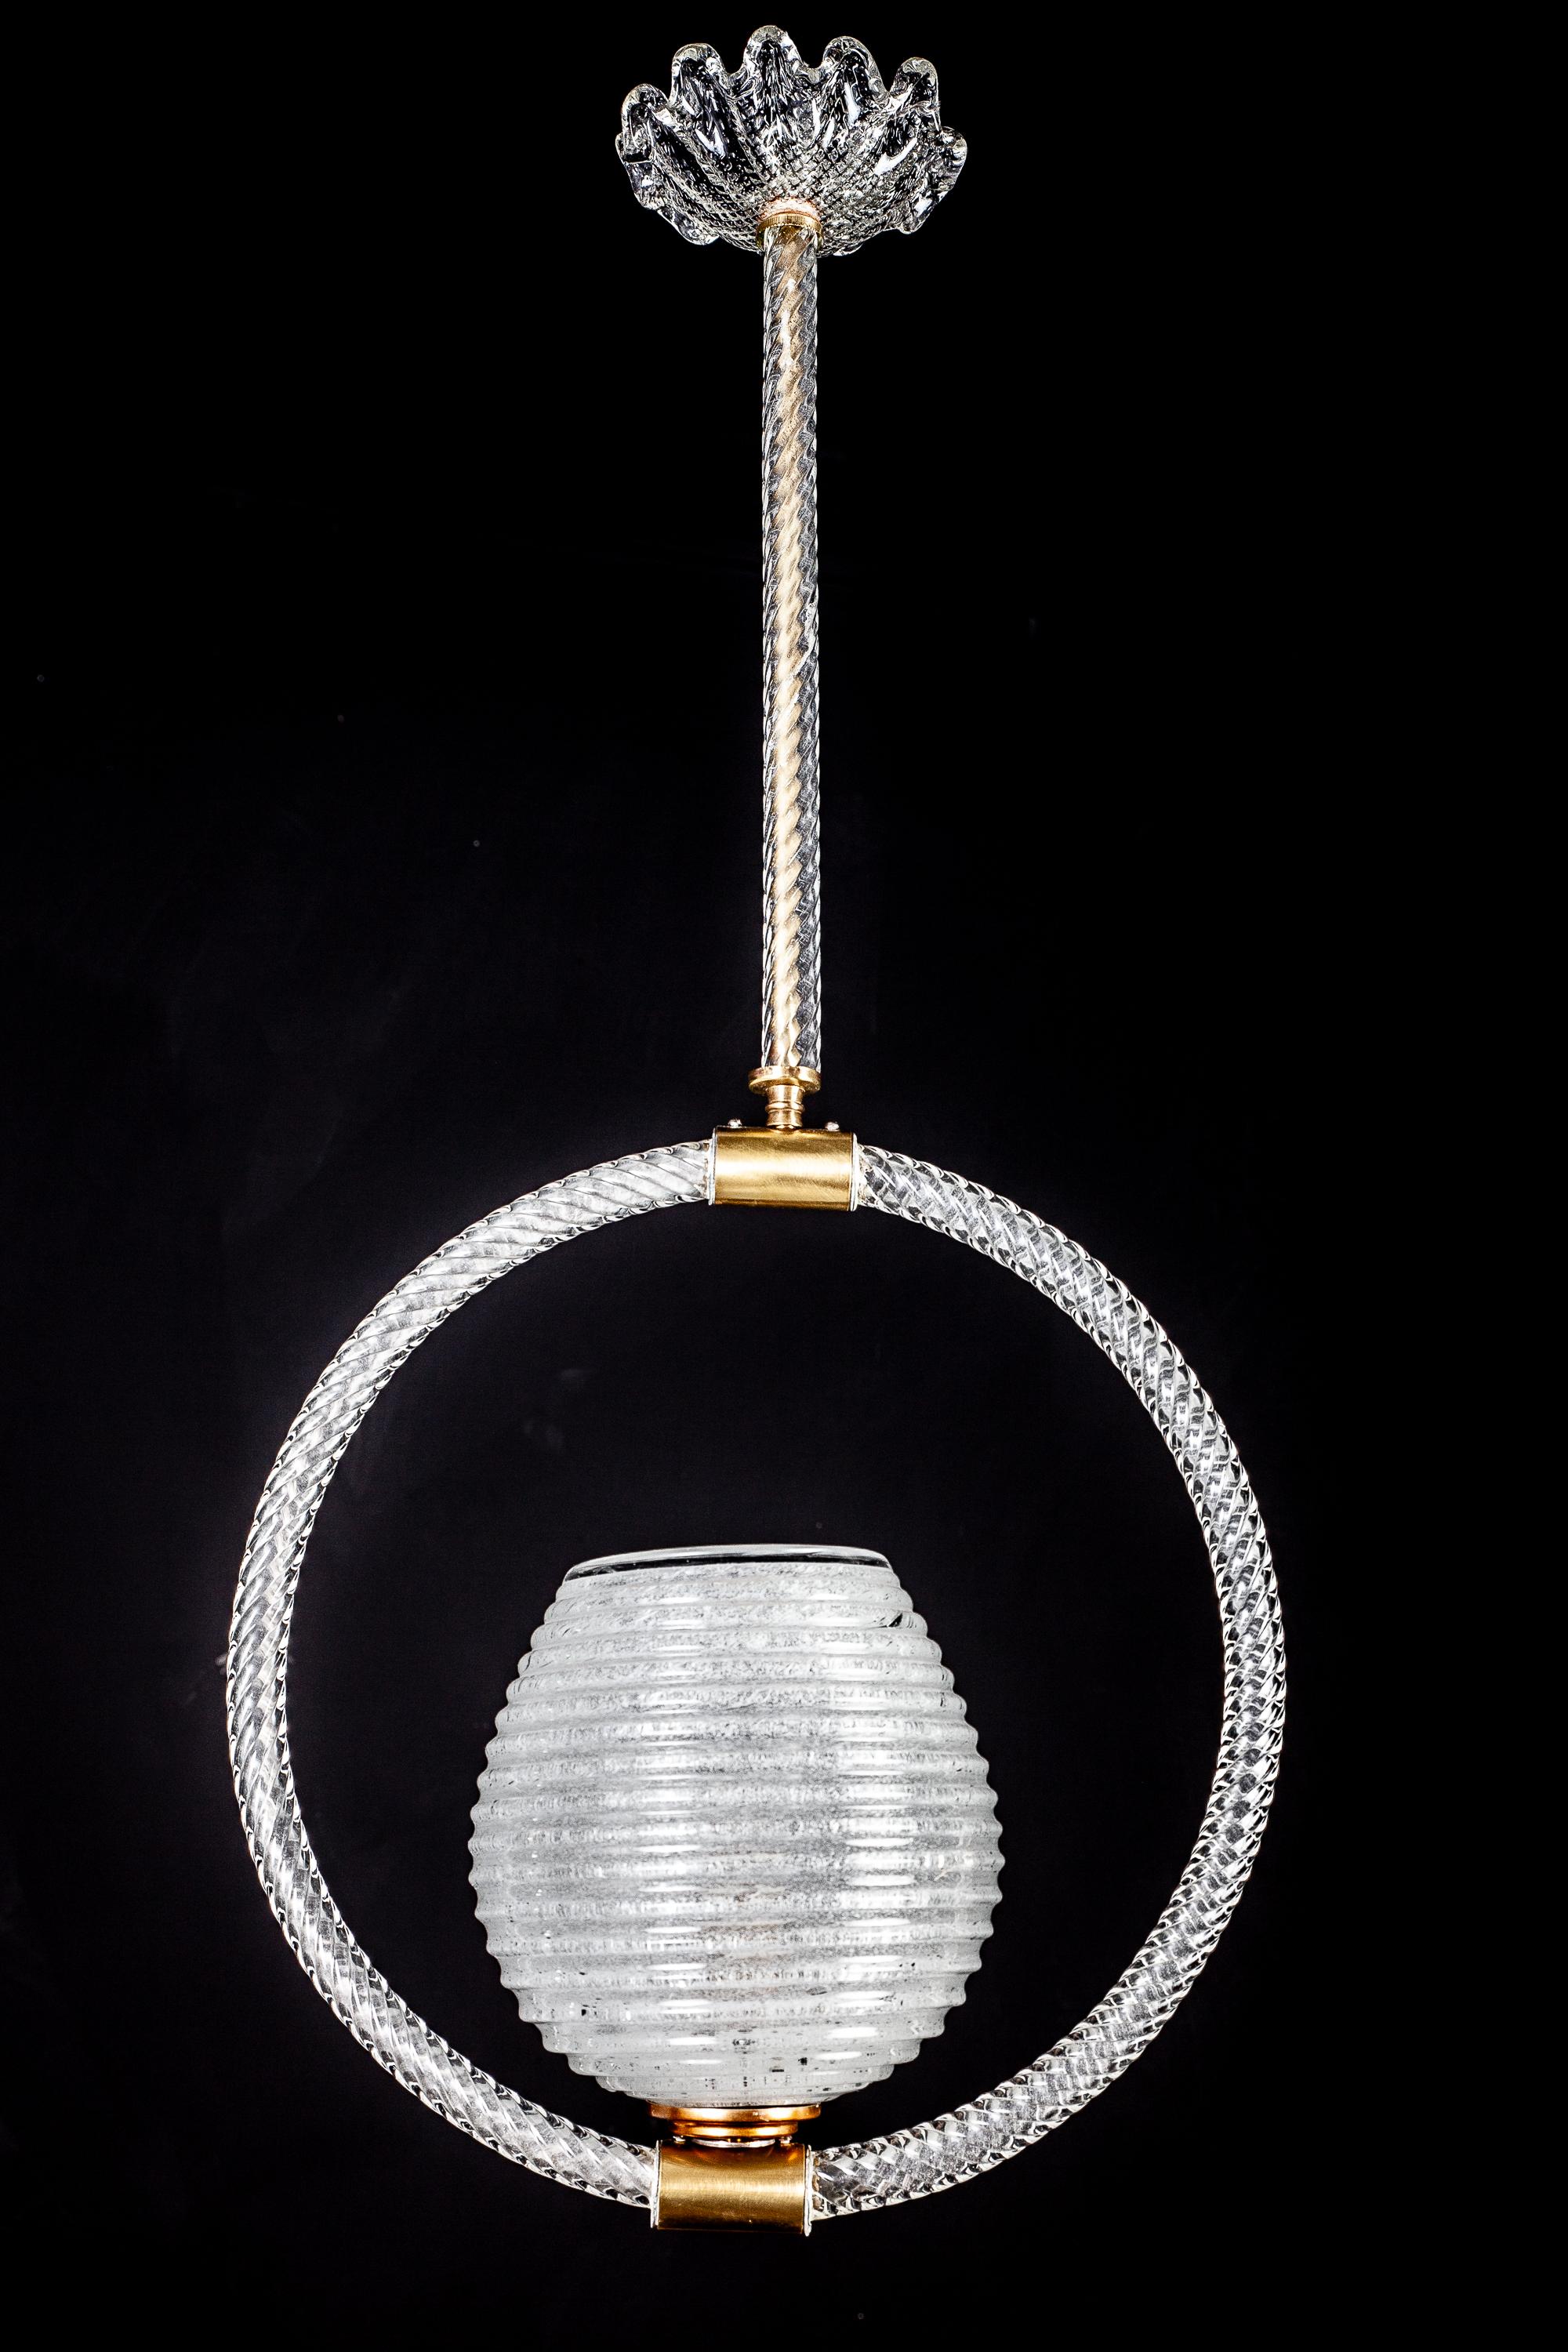 Feiner Kronleuchter von Ercole Barovier, in dessen Zentrum ein kostbarer Muranoglasbecher steht. Ein Design von purer Eleganz. Alle hochwertigen Gläser sind in perfektem Zustand.
Eine Glühbirne E 27.